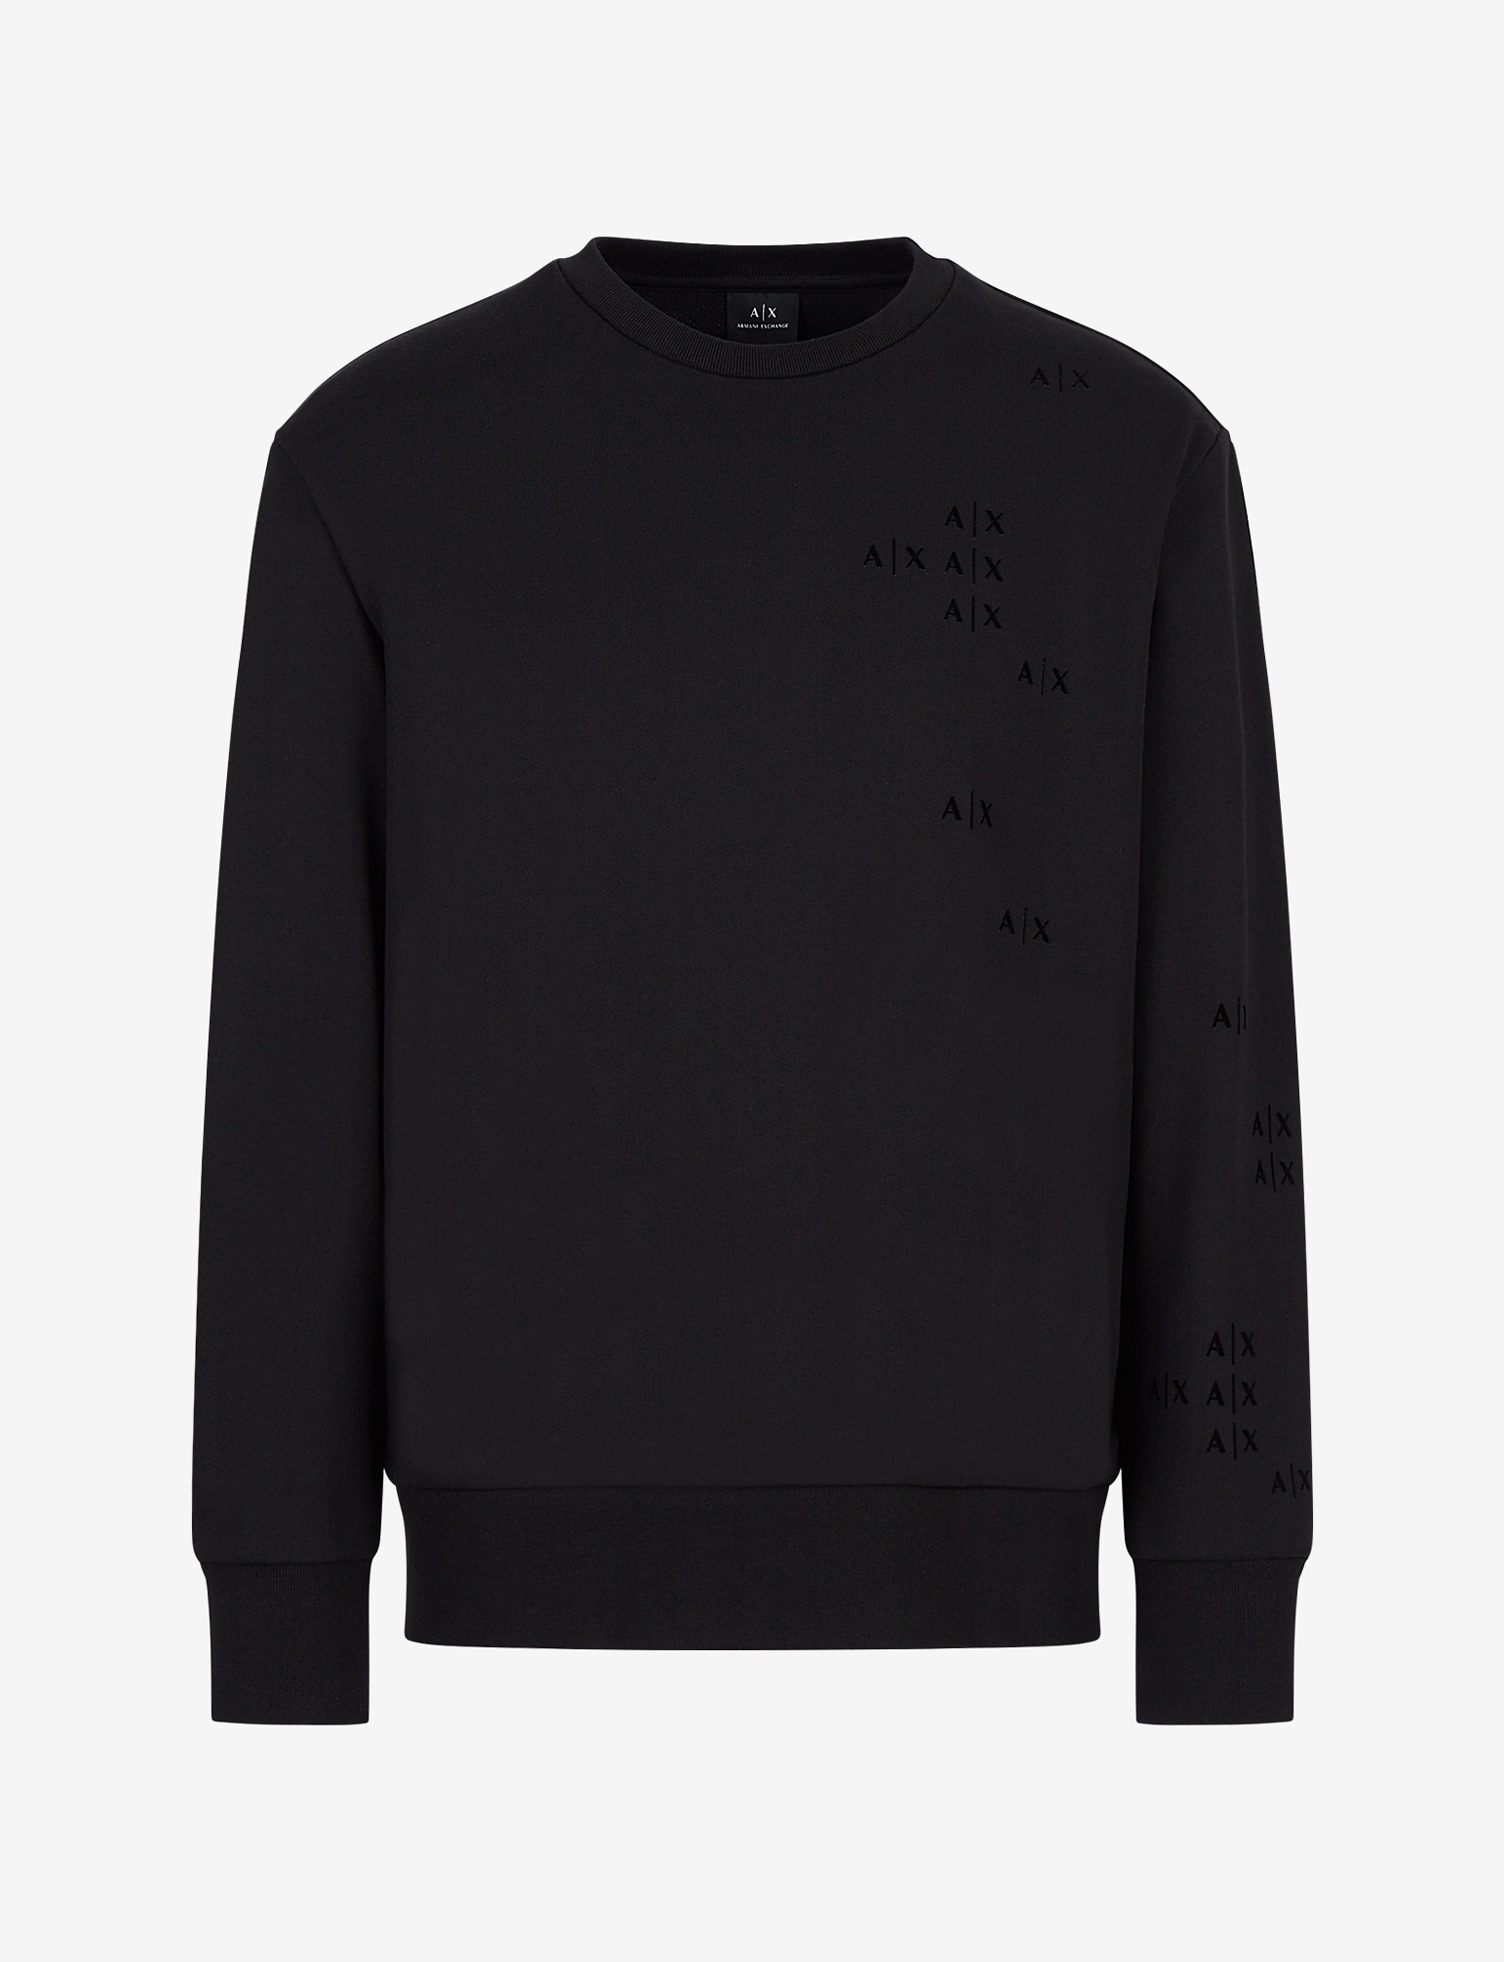 Armani Exchange Sweatshirt - black 